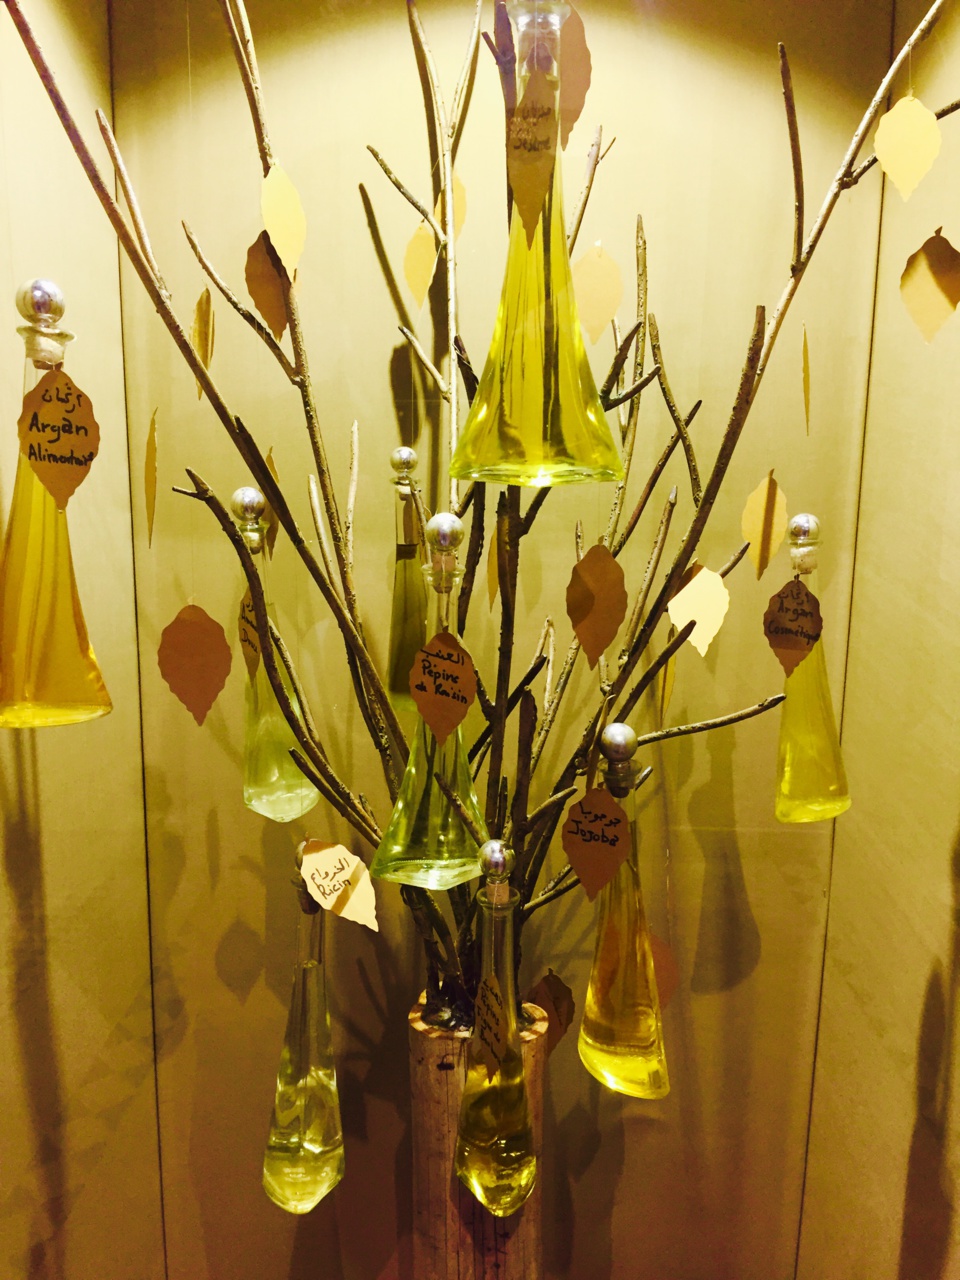 Ouverture du Musée du Parfum à Marrakech